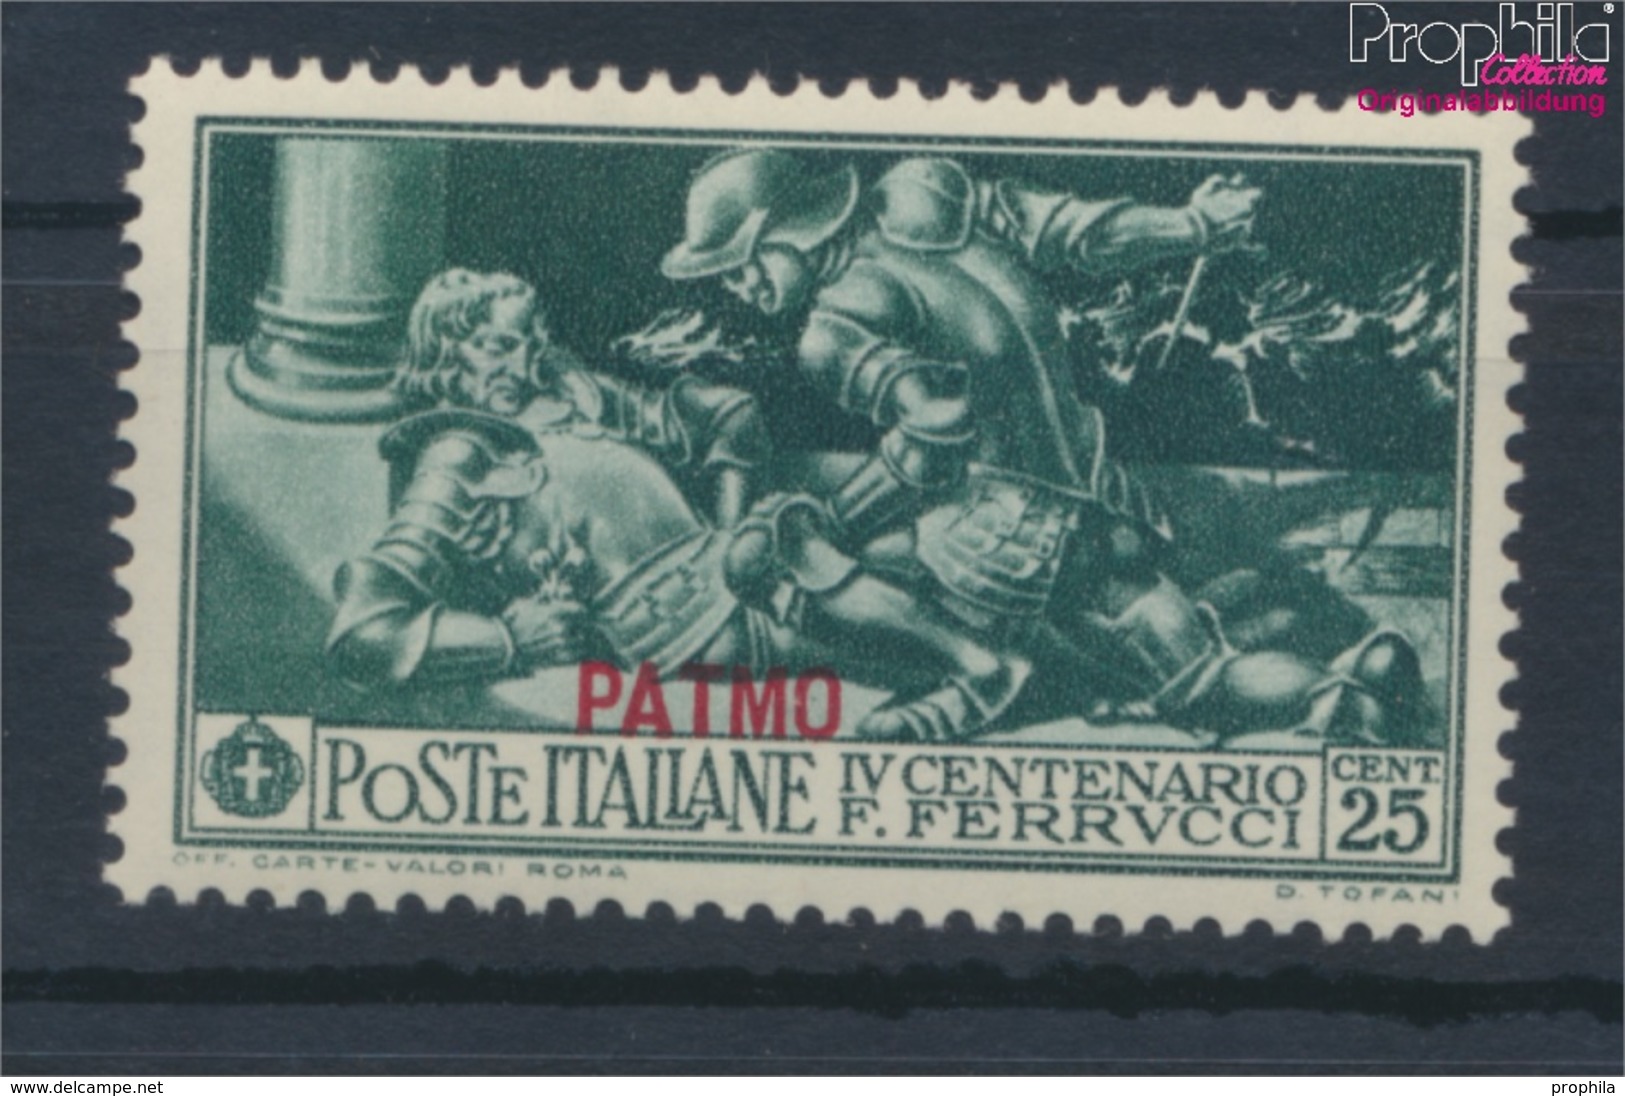 Ägäische Inseln 27VIII Postfrisch 1930 Ferrucci Aufdruckausgabe Patmo (9465480 - Aegean (Patmo)